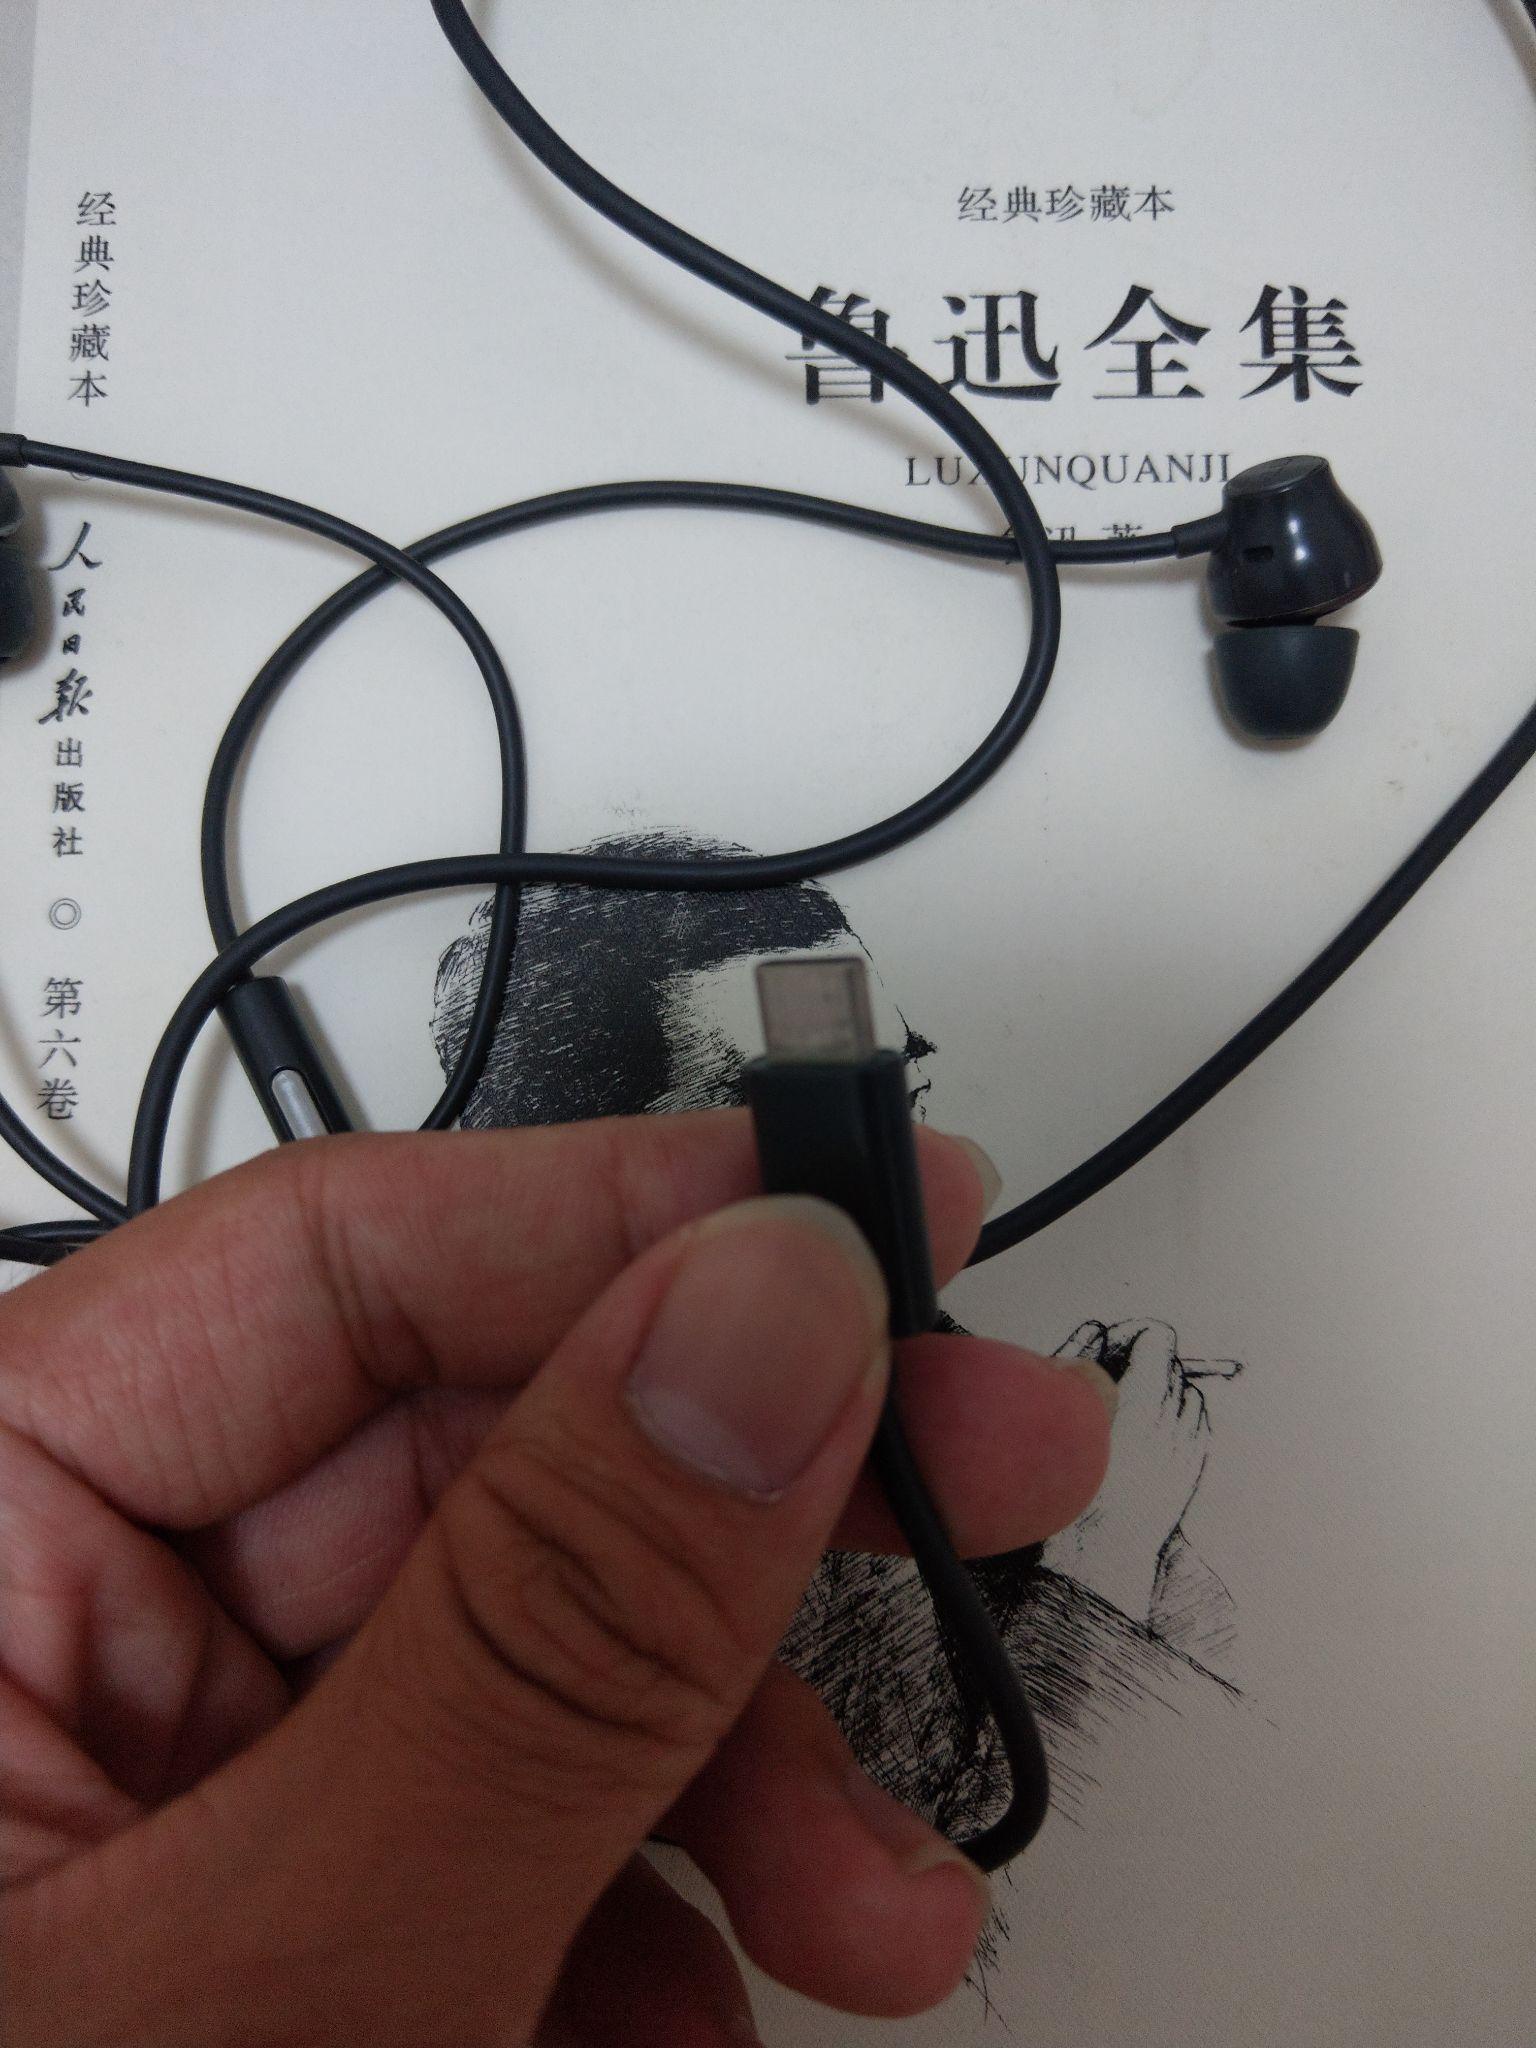 3.5mm耳机孔坏了,可以用type-c转换器在手机充